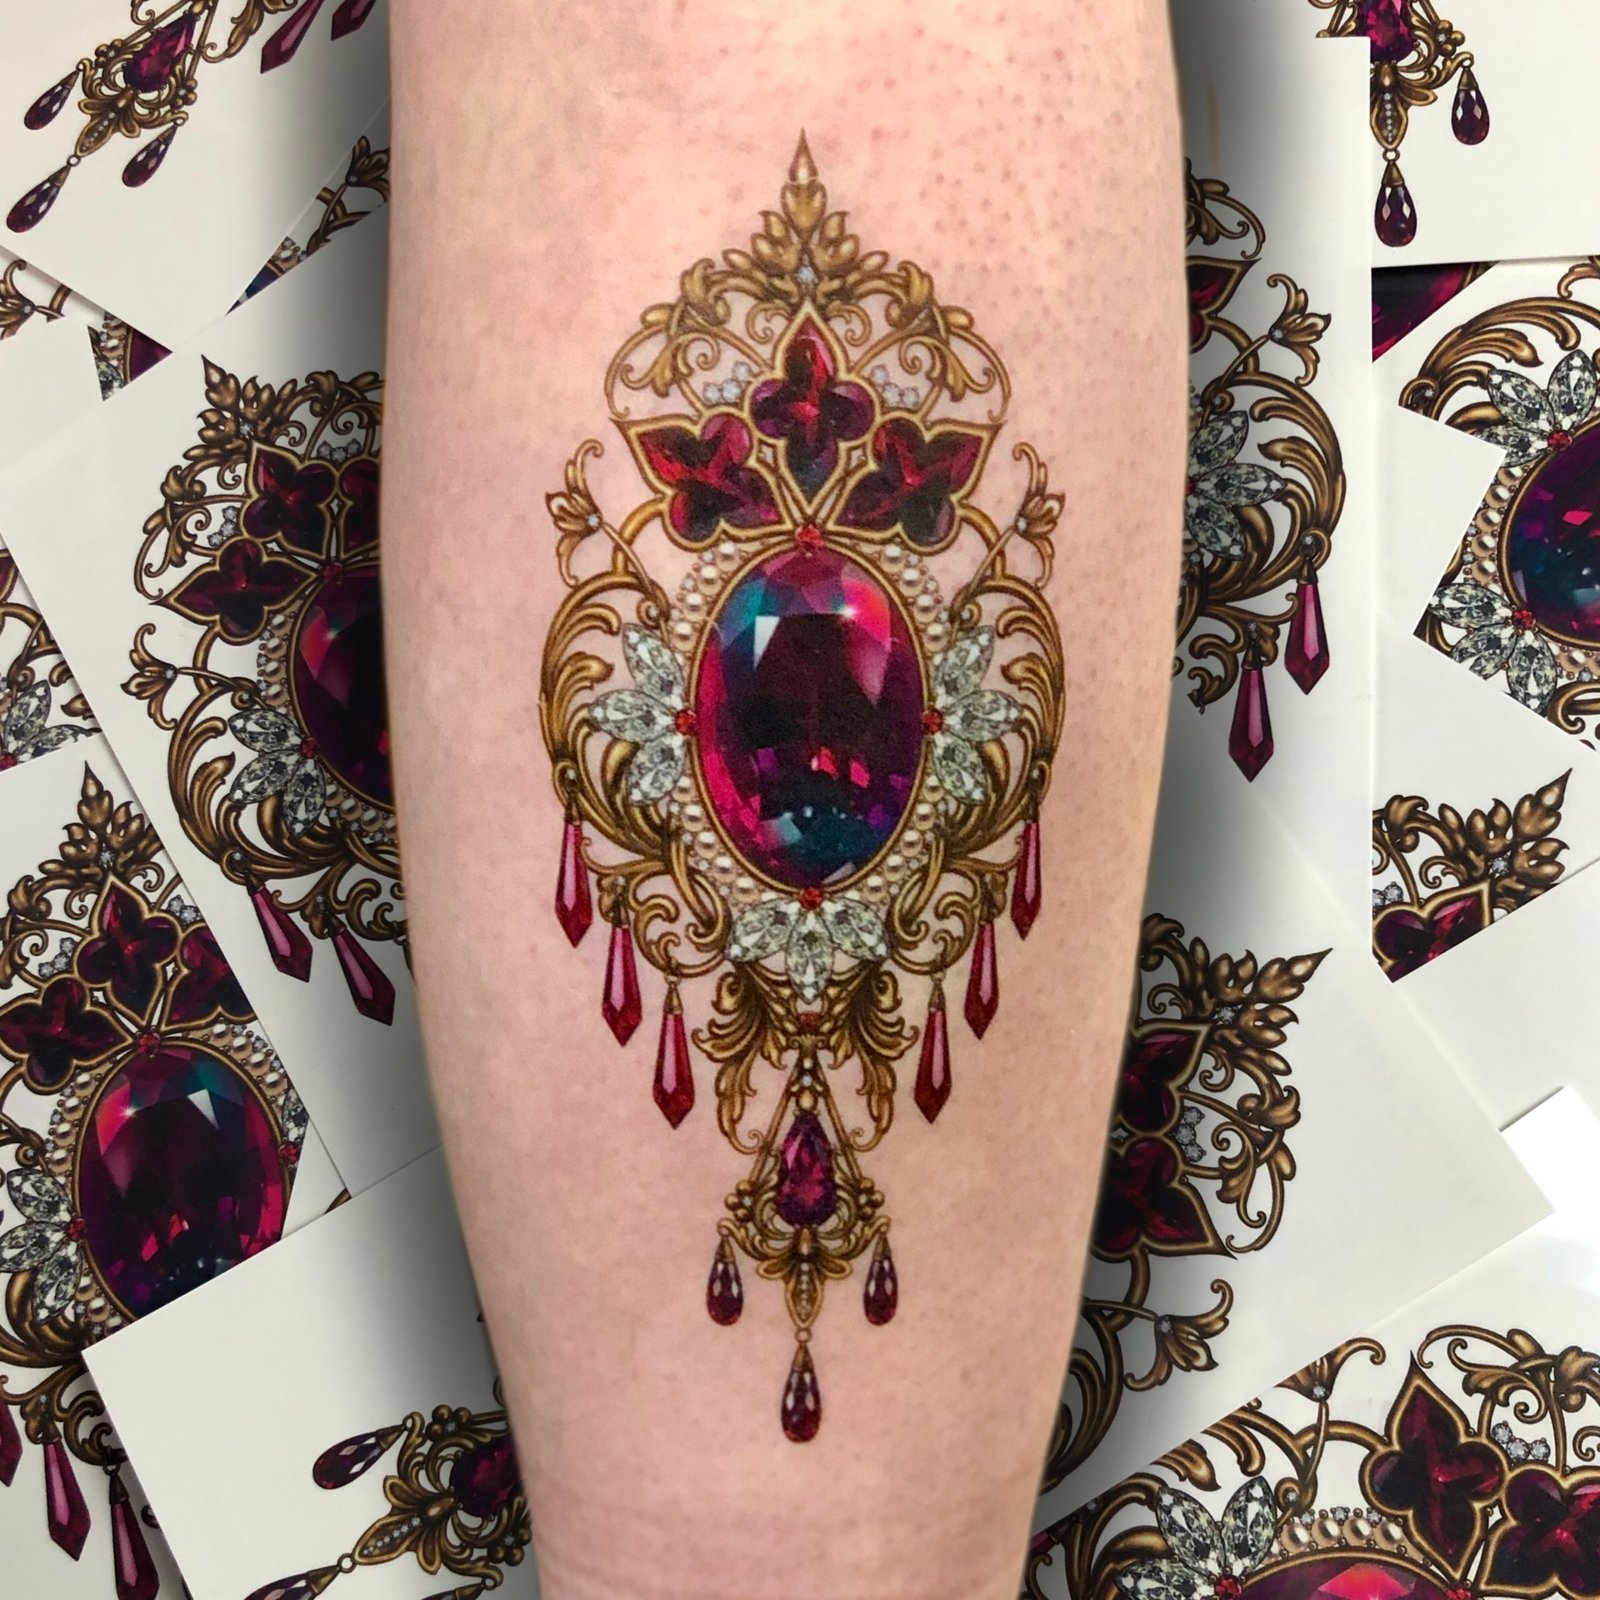 Tattoo uploaded by Anatta Vela • Gold and gem tattoo by Mumi Ink #MumiInk  #gold #gems #jewels #filigree #realism #ornamental • Tattoodo